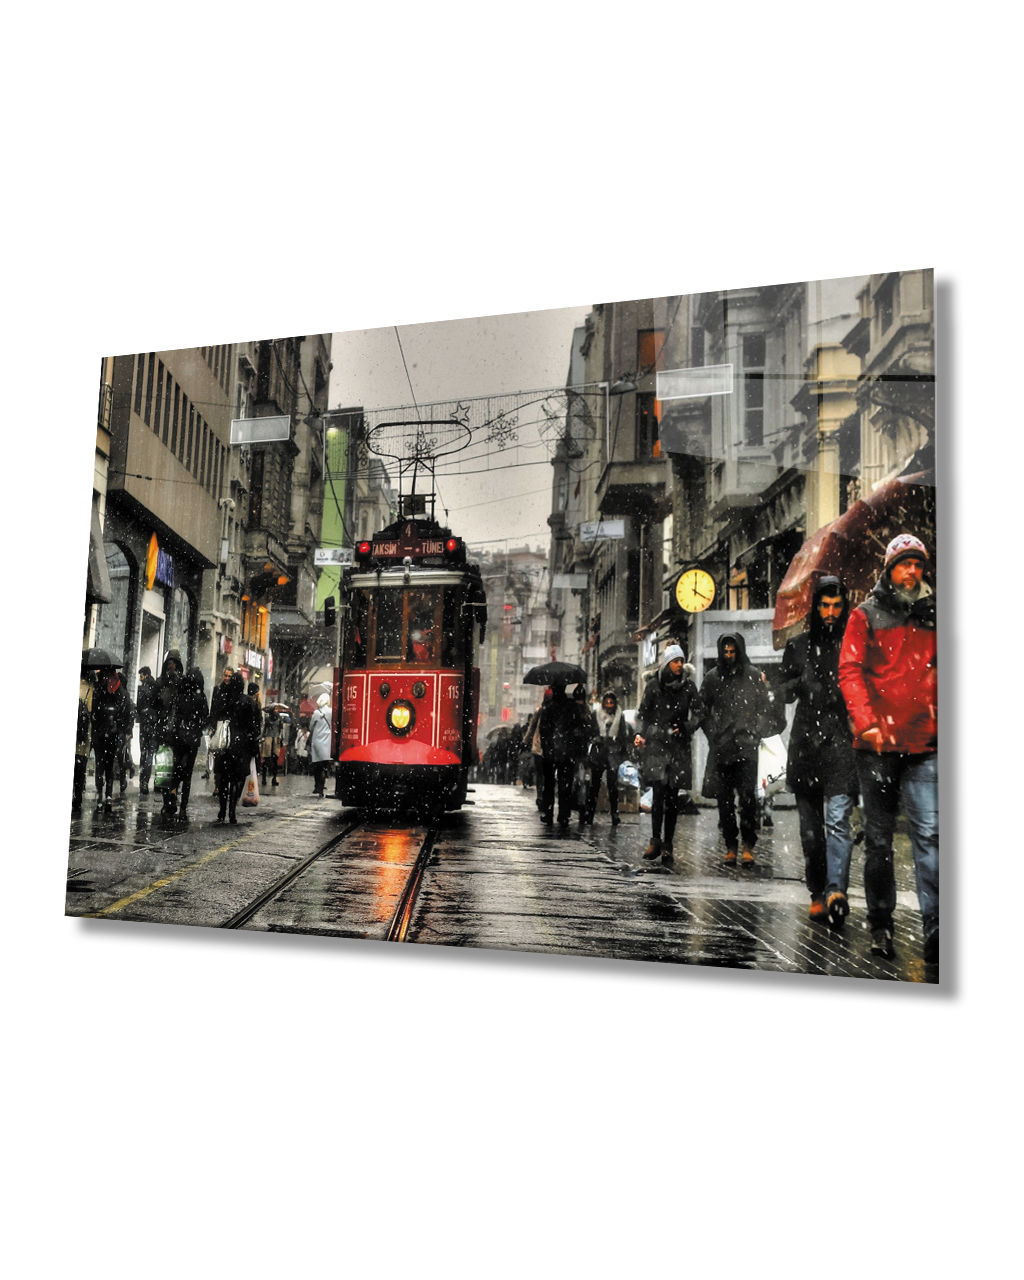 İstanbul Taksim Tramvay Cam Tablo 4mm Dayanıklı Temperli Cam